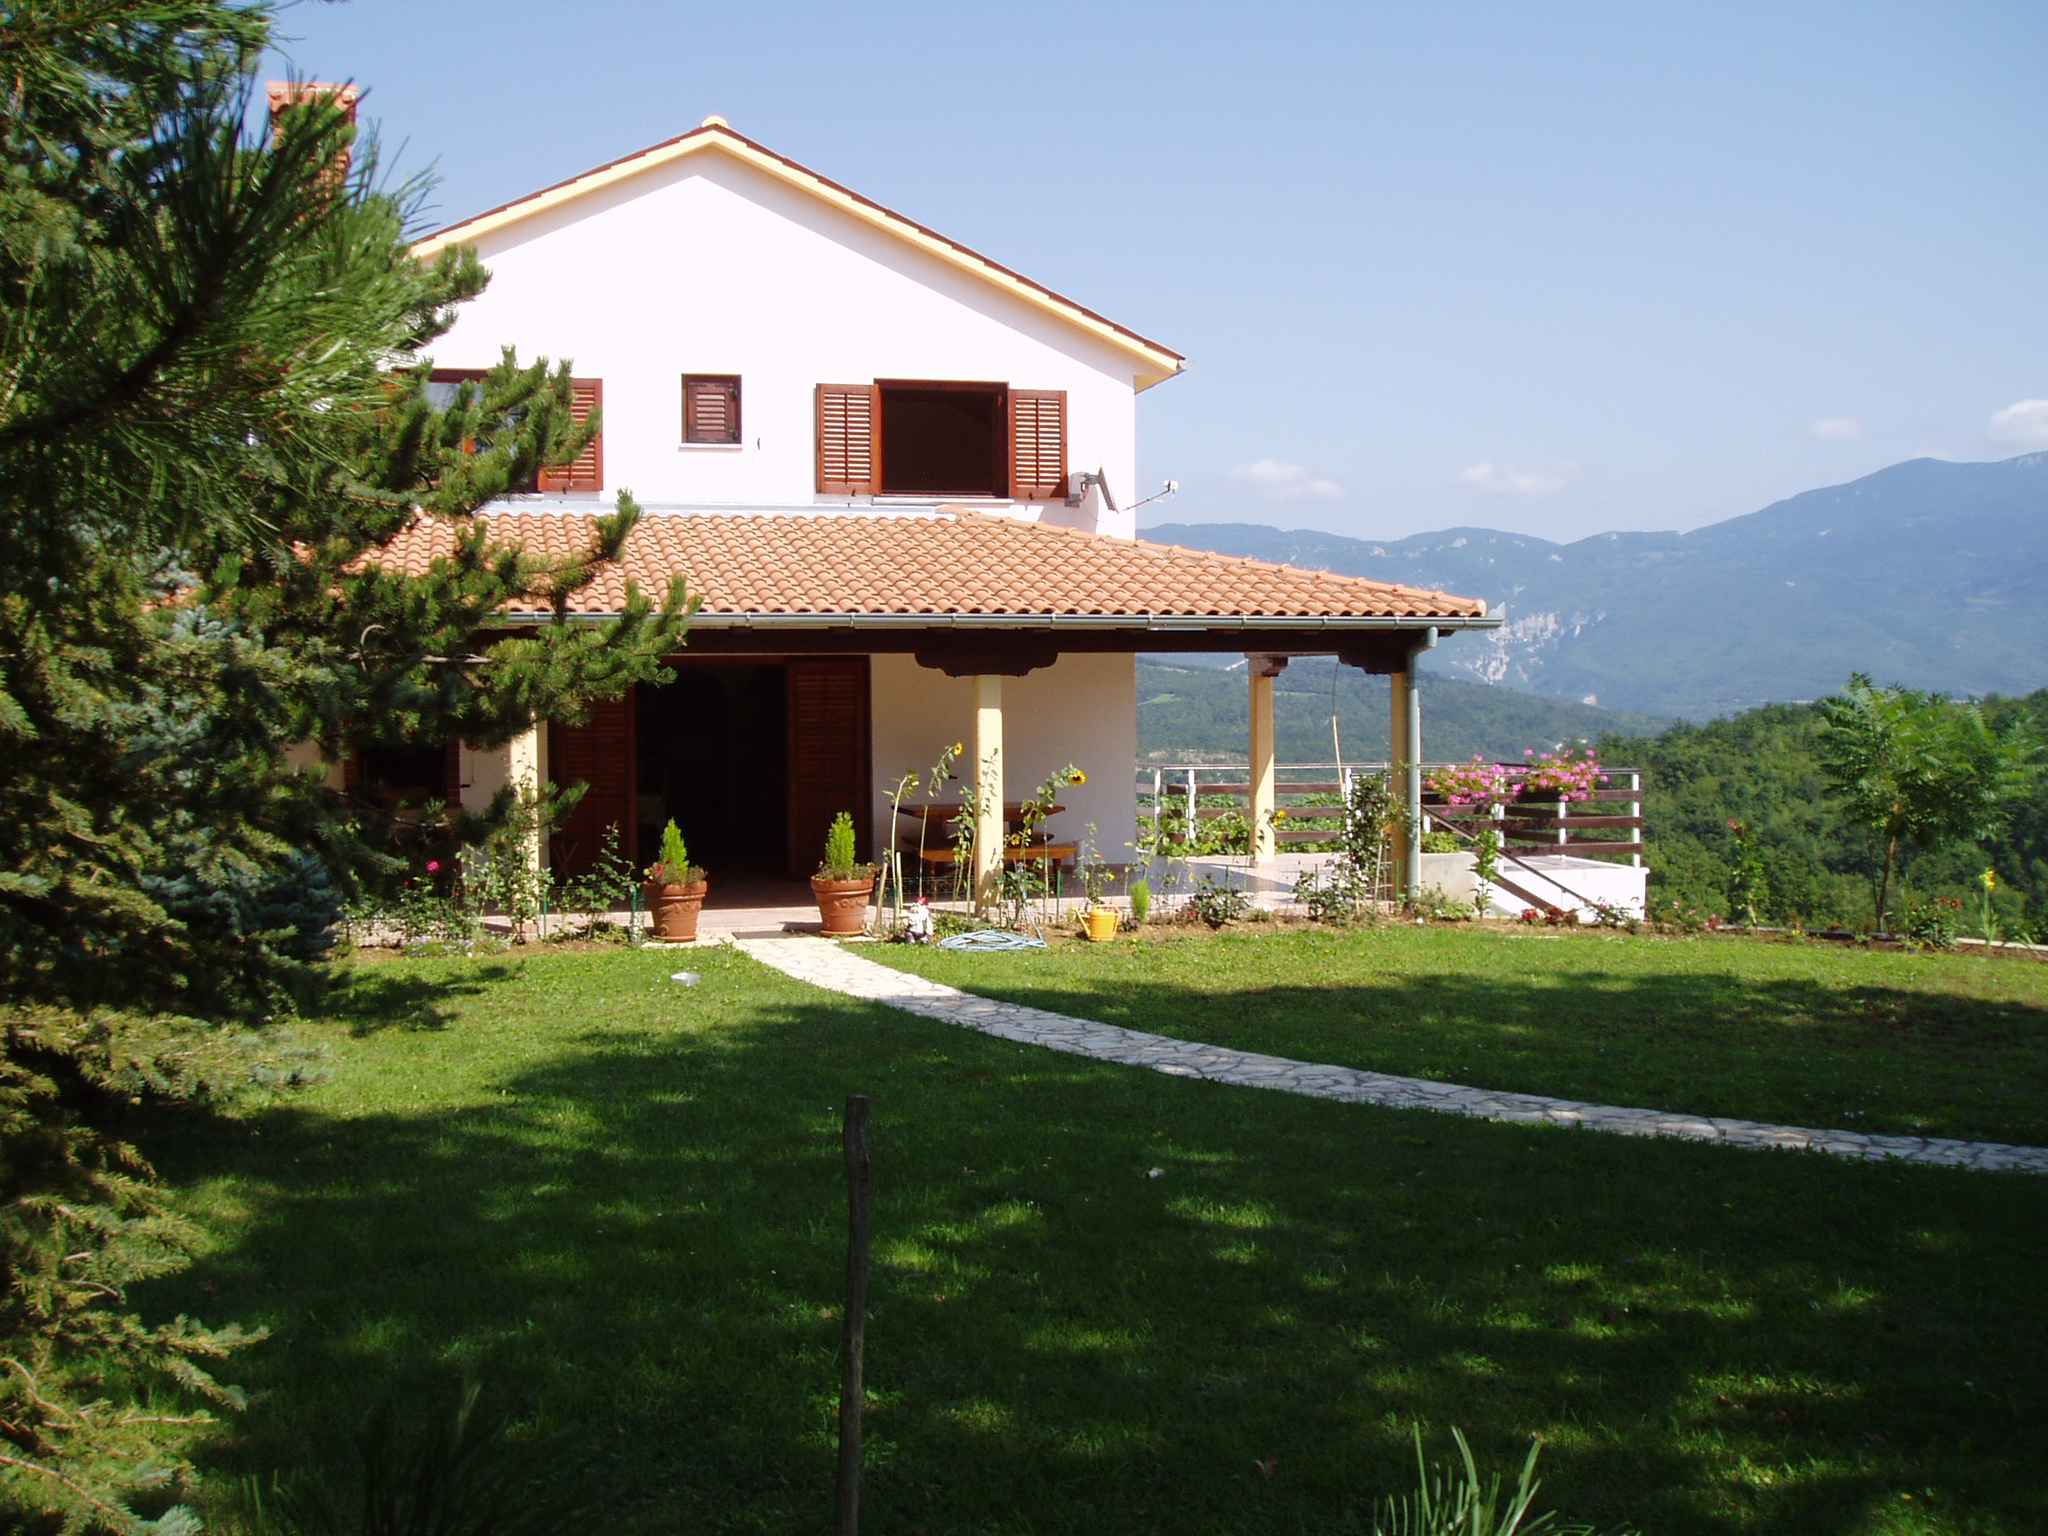 Ferienhaus in der Natur mit Weinberg und Olivenhai Bauernhof in Istrien